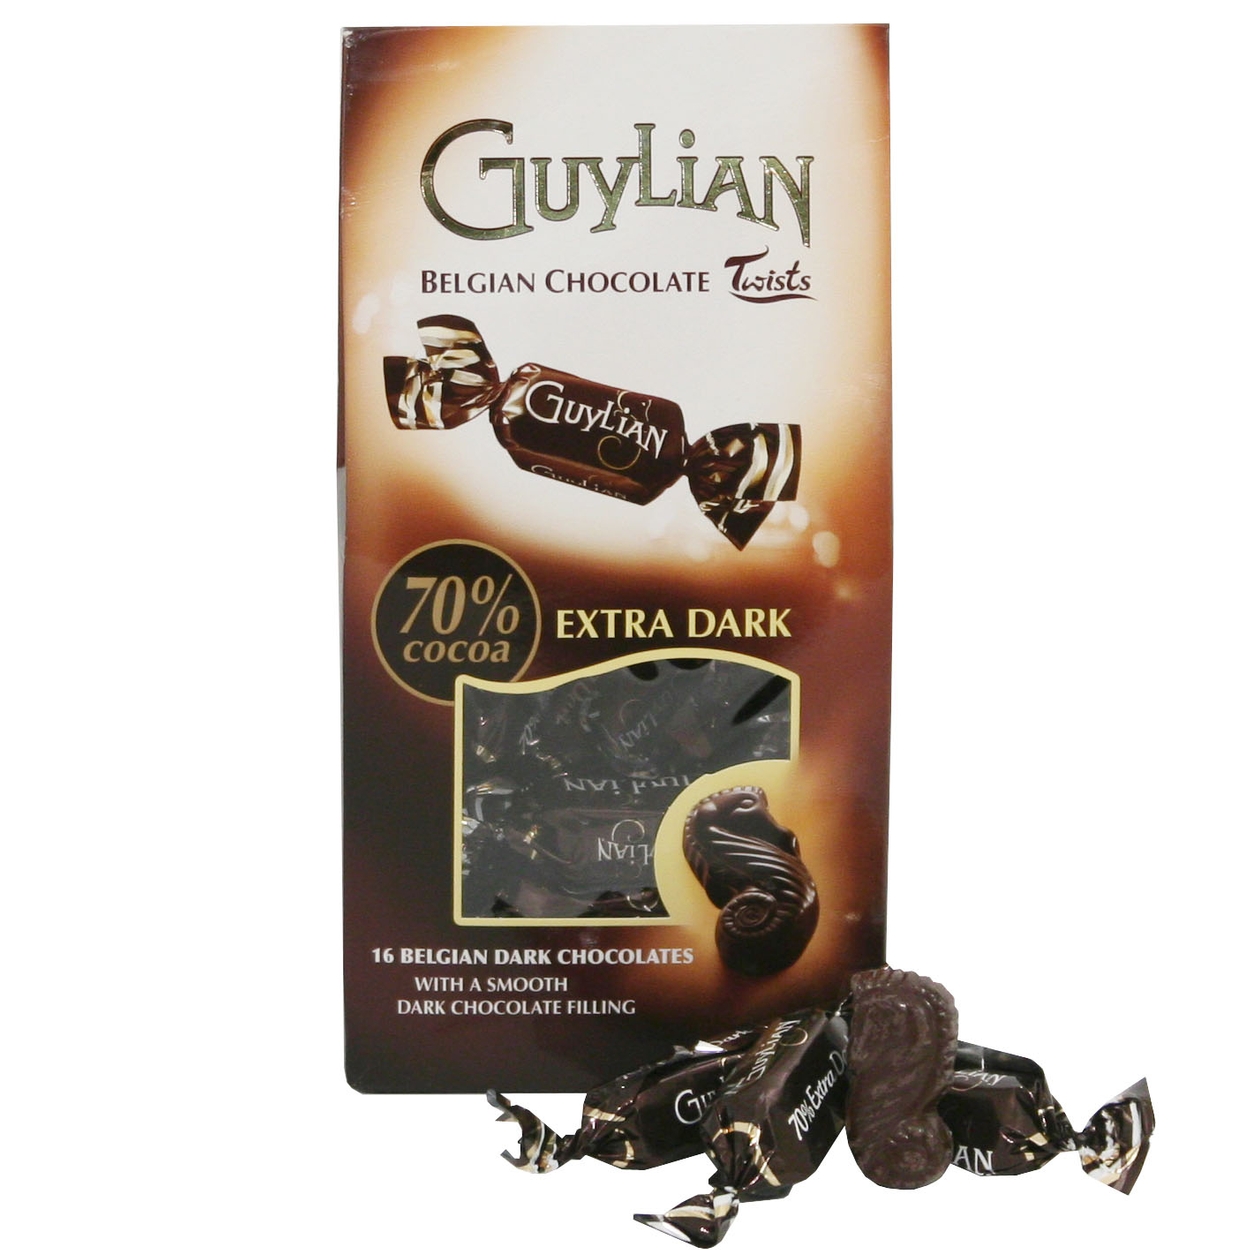 New Guylian Chocolate Bars